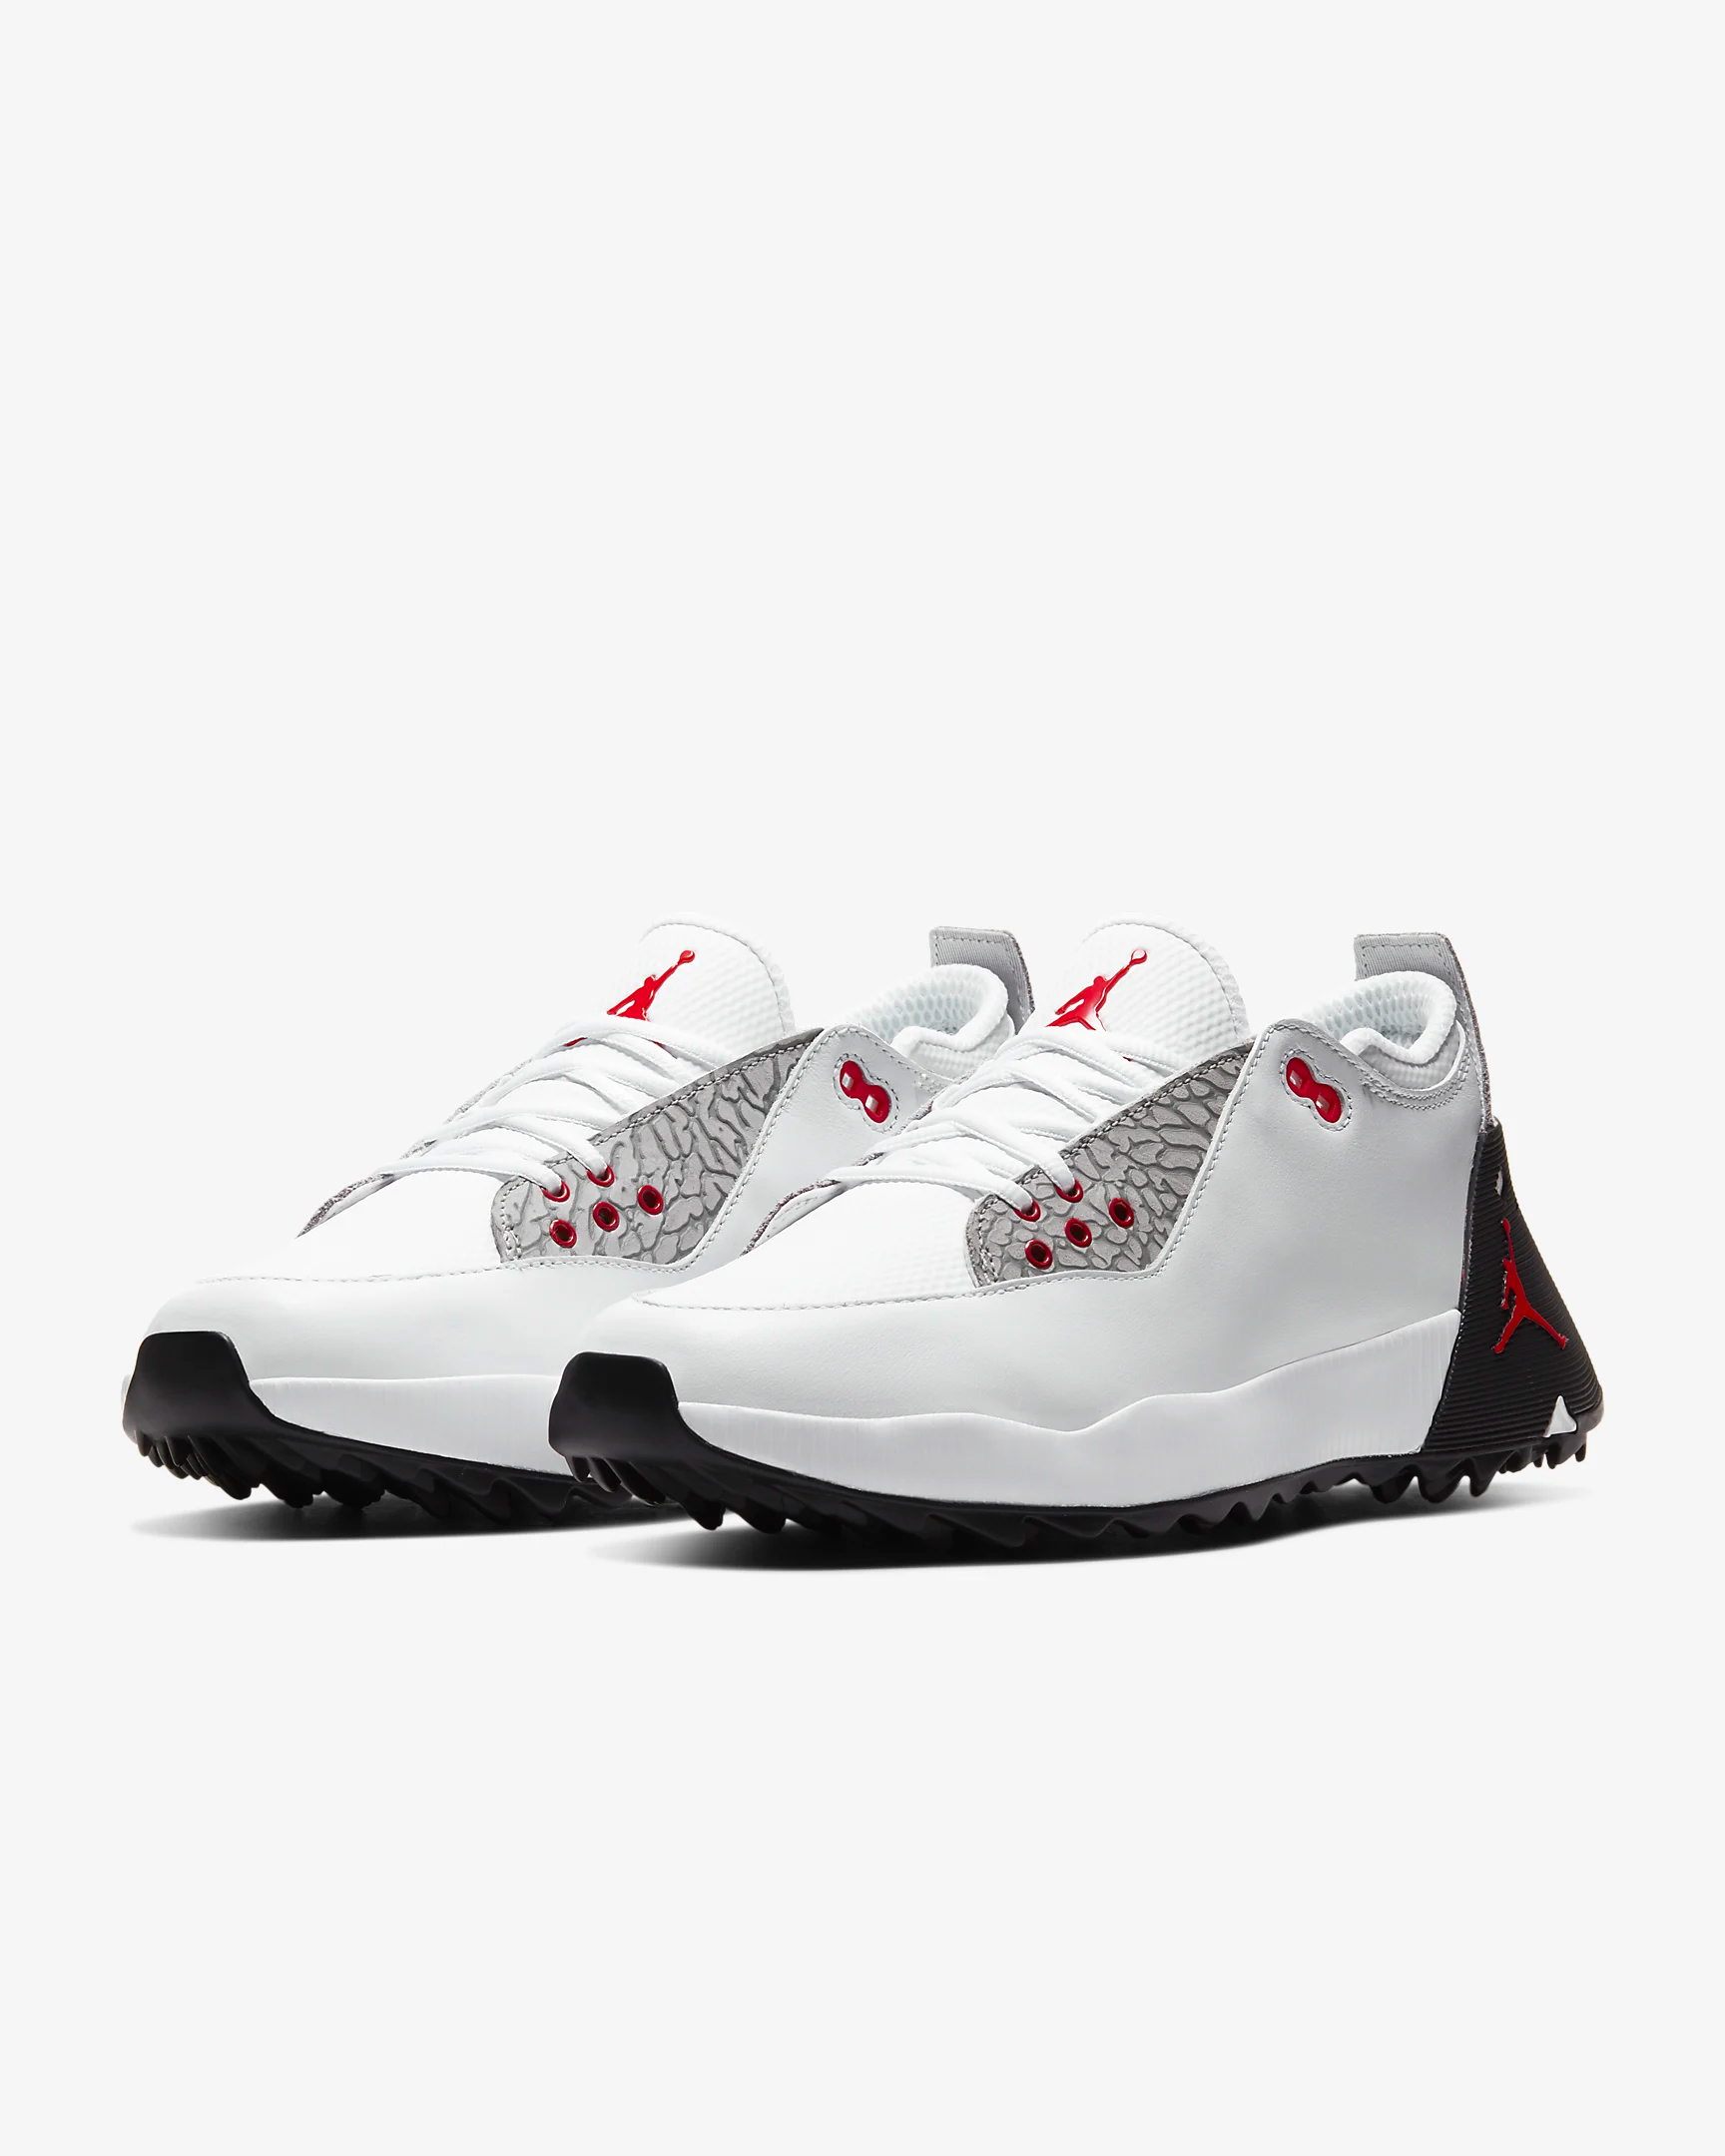 Nike releases spikeless Jordan golf shoes | Golf Equipment: Clubs, Balls,  Bags | Golf Digest